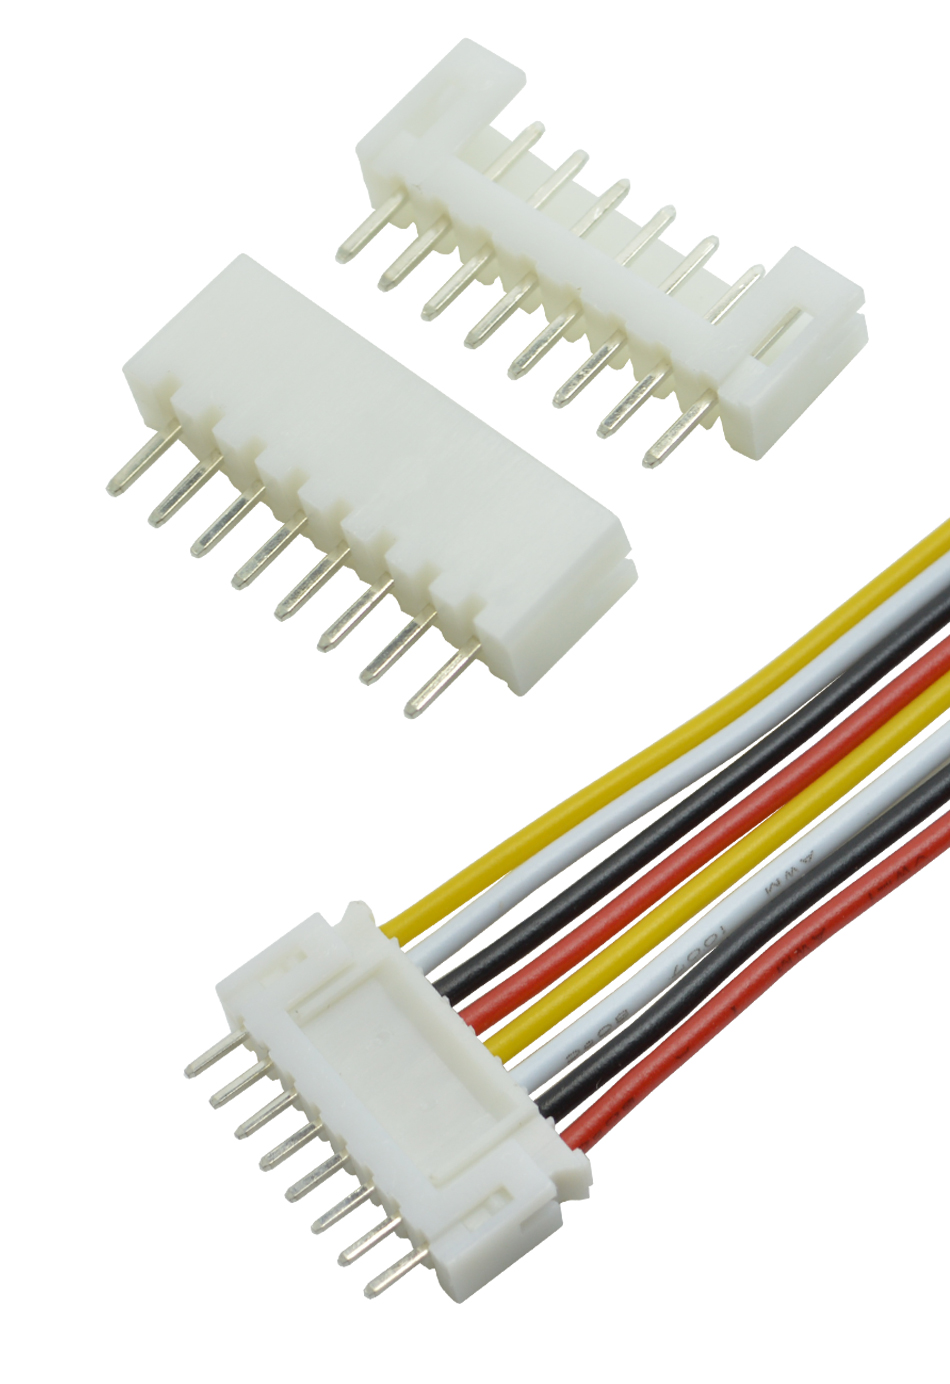  电子现货供应PHD直针连接器 2.0mm 接插件 条形连接器2A-12A,宏利